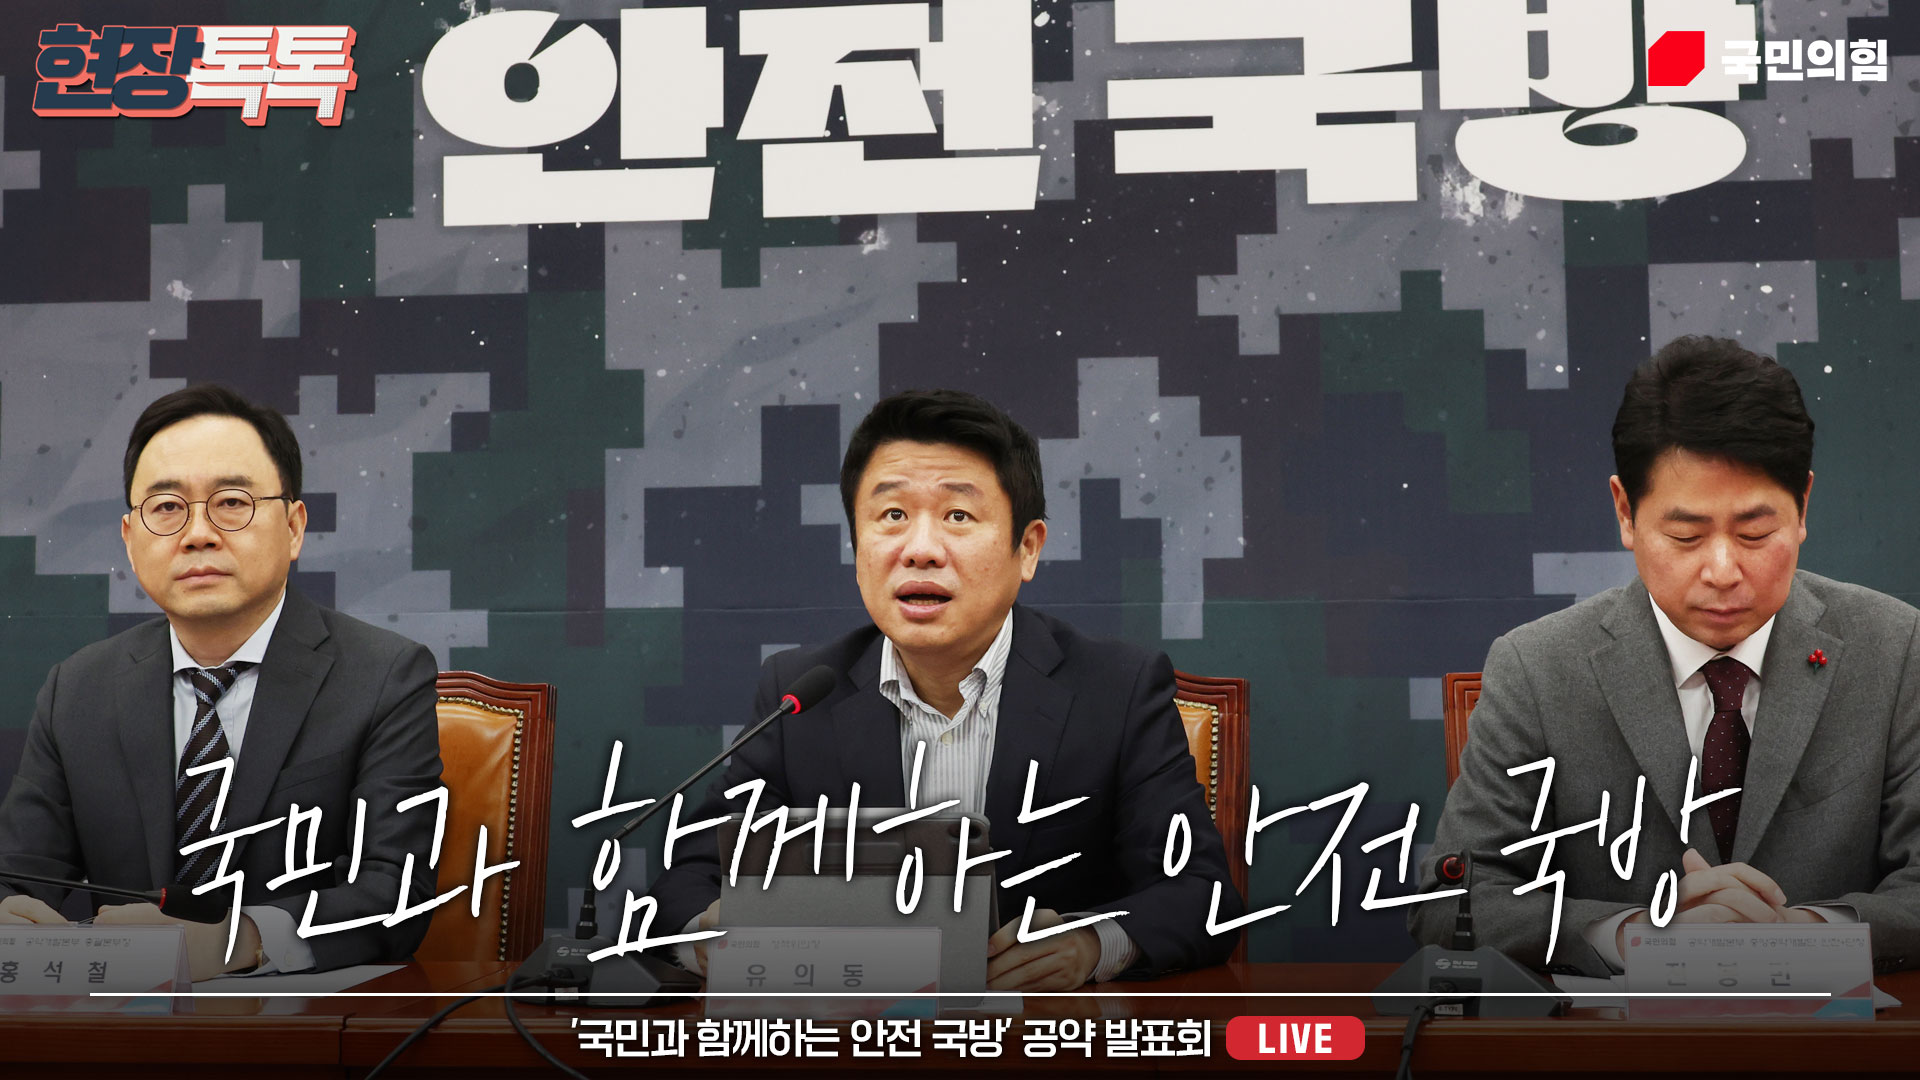 [Live] 2월 18일 '국민과 함께하는 안전 국방' 공약 발표회